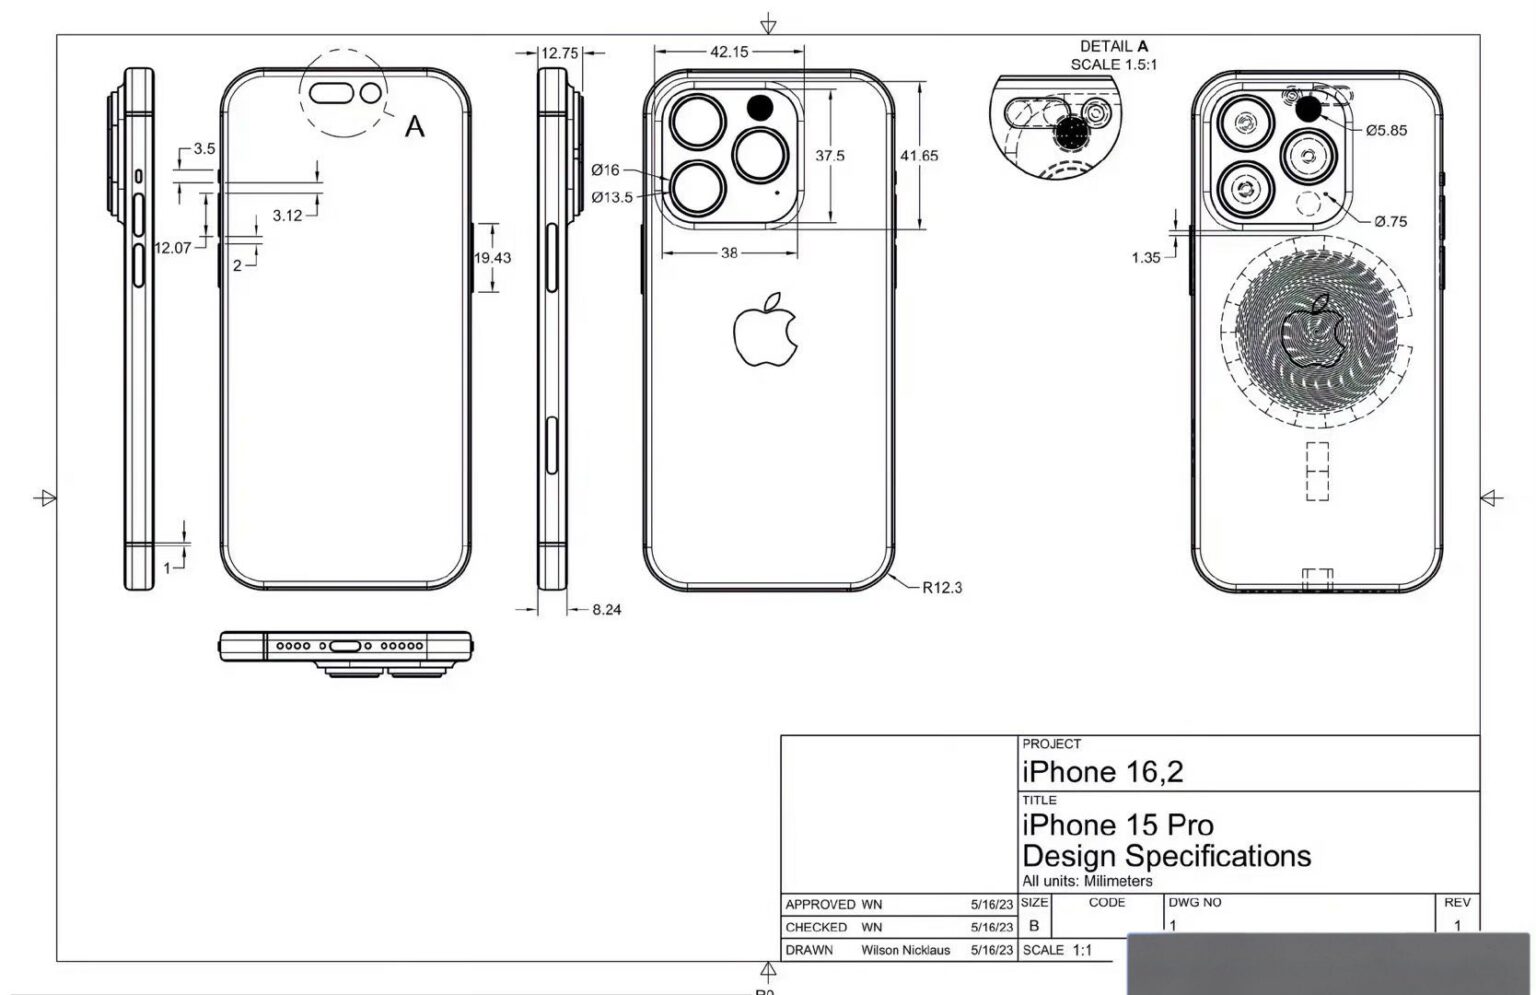 Gigantyczny wyciek: Wygląd, wymiary iPhone 15 Pro ujawnione! ciekawostki wygląd, wyciek danych, USB-C, tryb cichy, Standaryzacja, Smartfon, przycisk, Port ładowania, Majin Bu, iphone 15 pro, innowacje, Hity sprzedażowe, Grubszy design, Dłuższa bateria, Apple  Do sieci wyciekły dane zdradzające wymiary, wygląd nadchodzącego iPhone 15 Pro. Zobaczcie jaki będzie tegoroczny smartfon firmy Apple. iphone15pro schemat